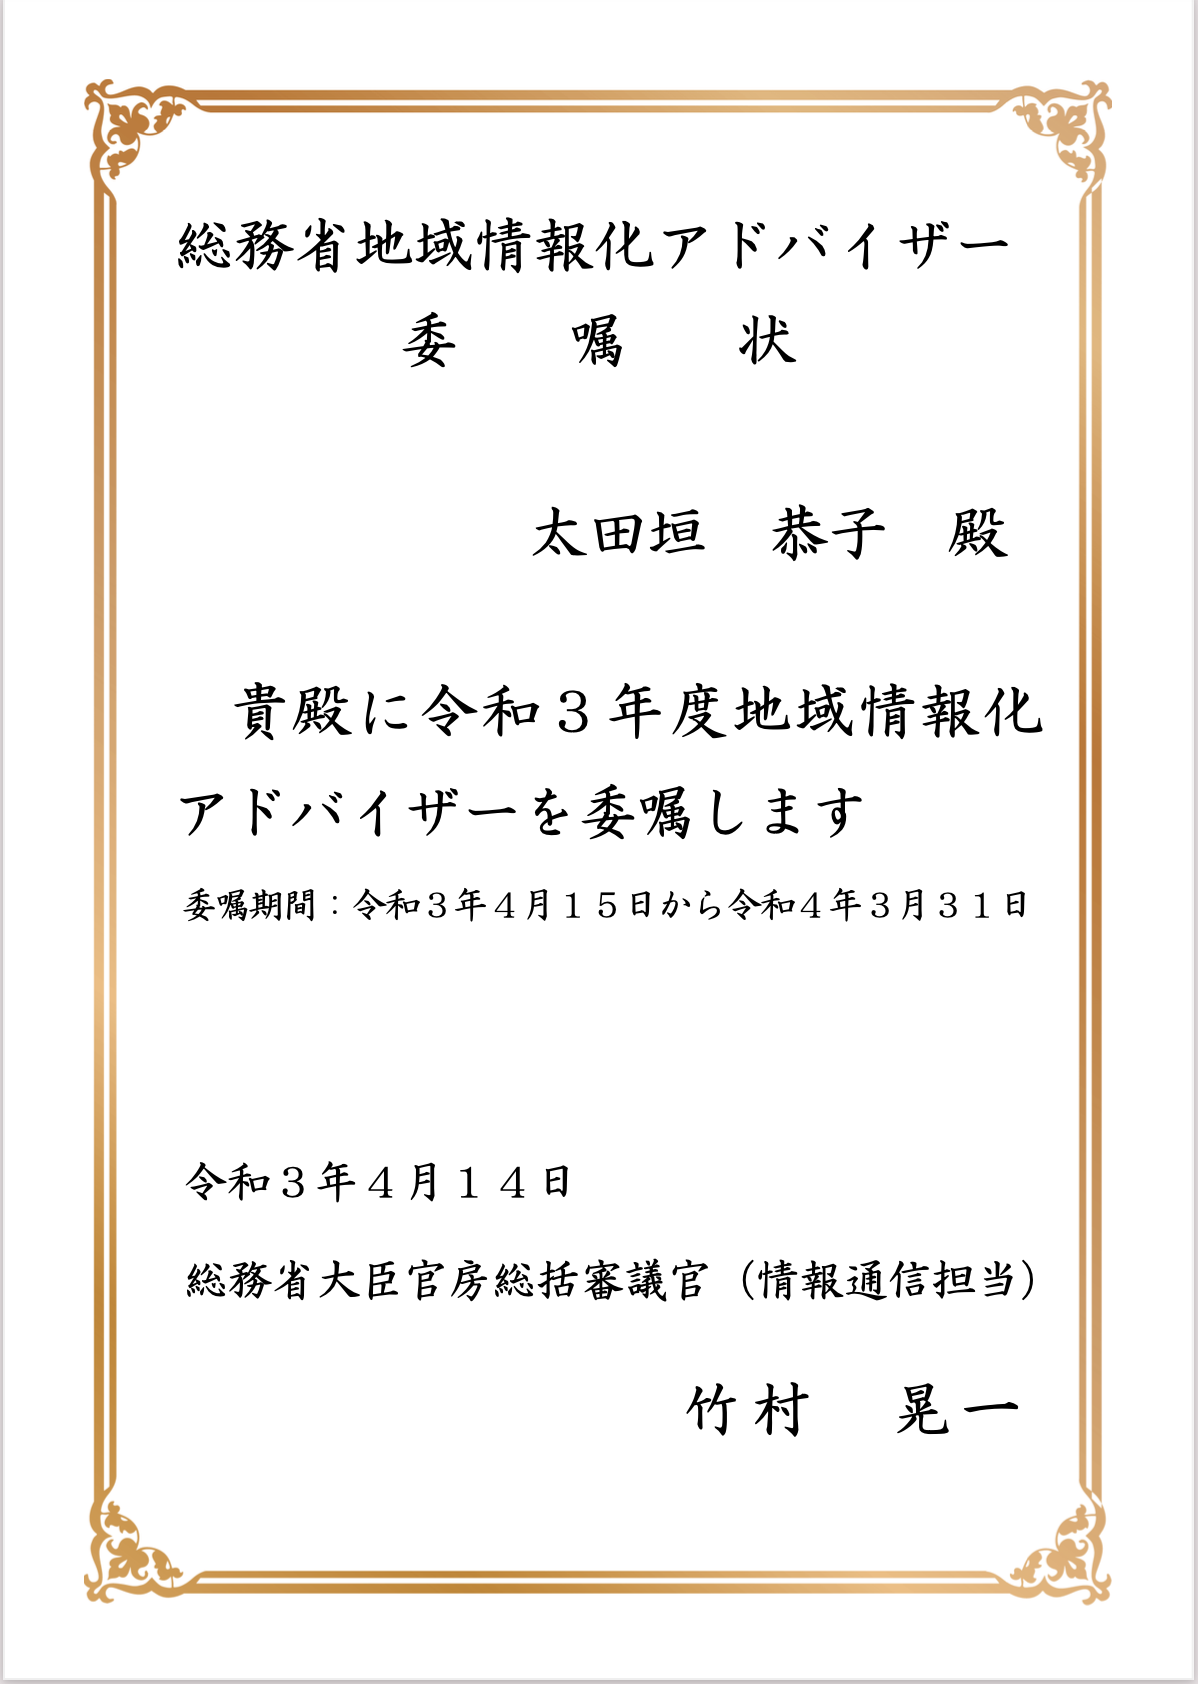 令和3年度『地域情報化アドバイザー』にANNAI 副社長の太田垣恭子が委嘱されました。